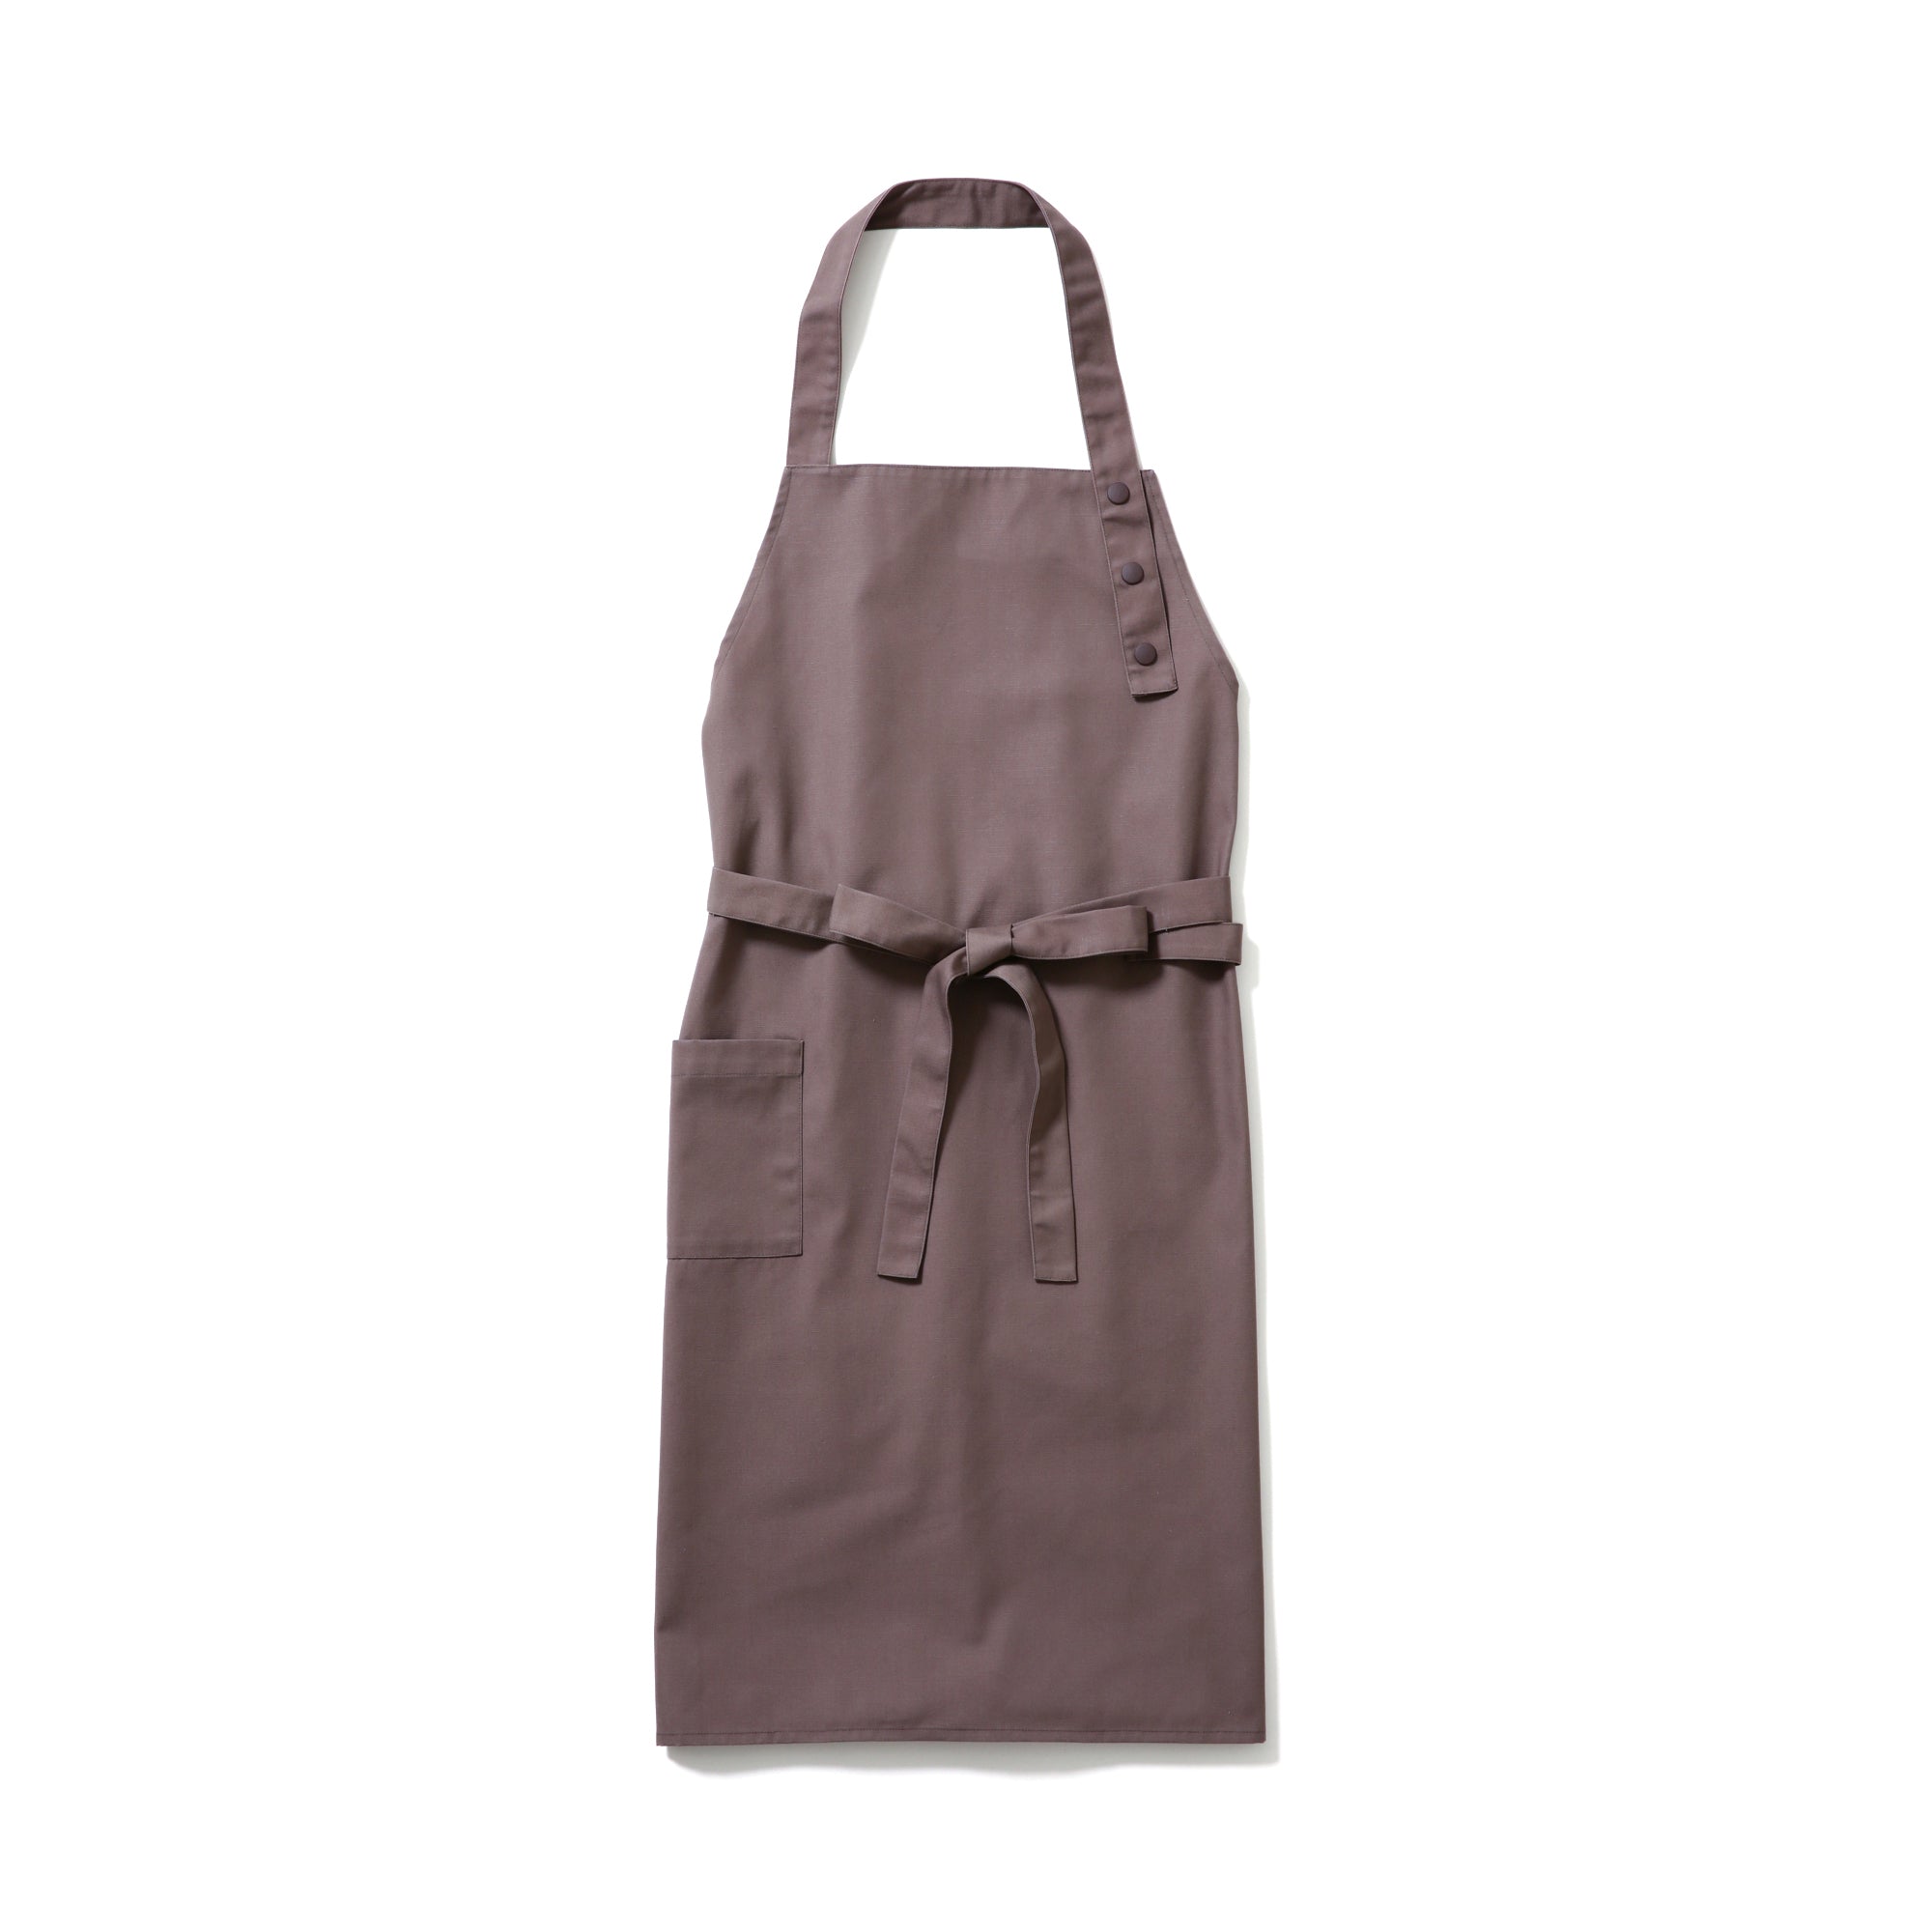 SALEセール Ambesonneキッチンエプロンマルチカラー印刷 Standard Size apron_29493 ガーデニングウェア 